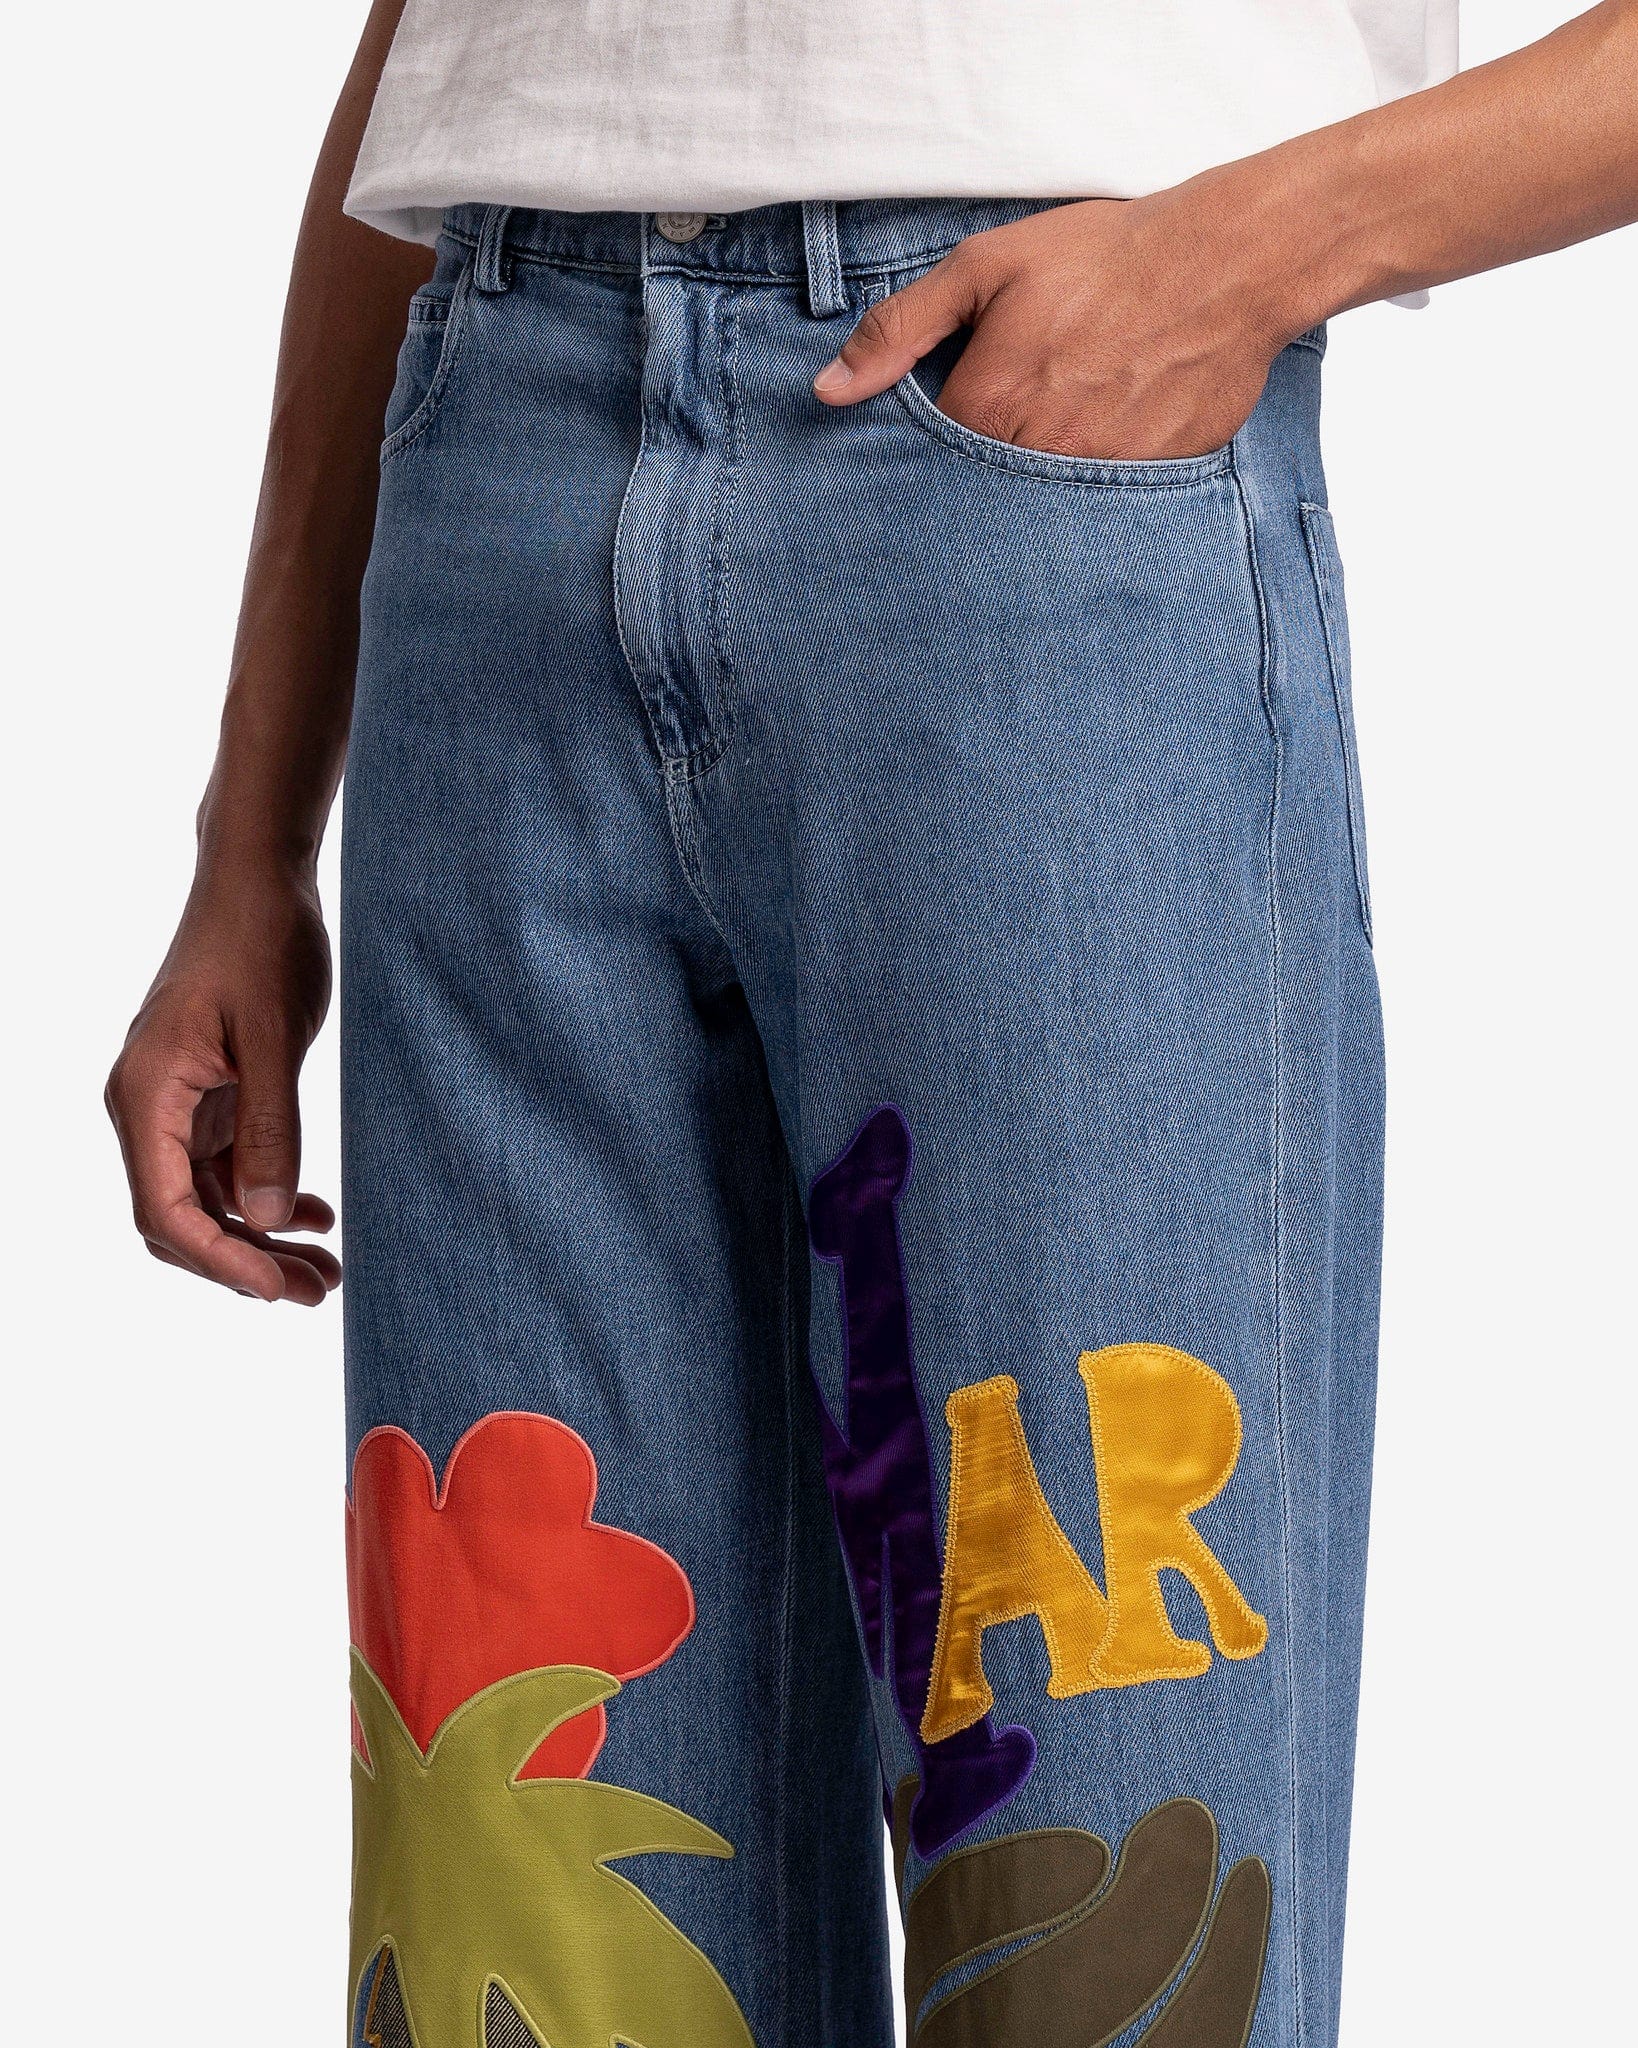 Marni Men's Jeans Worn Applique Detailed Denim in Iris Blue